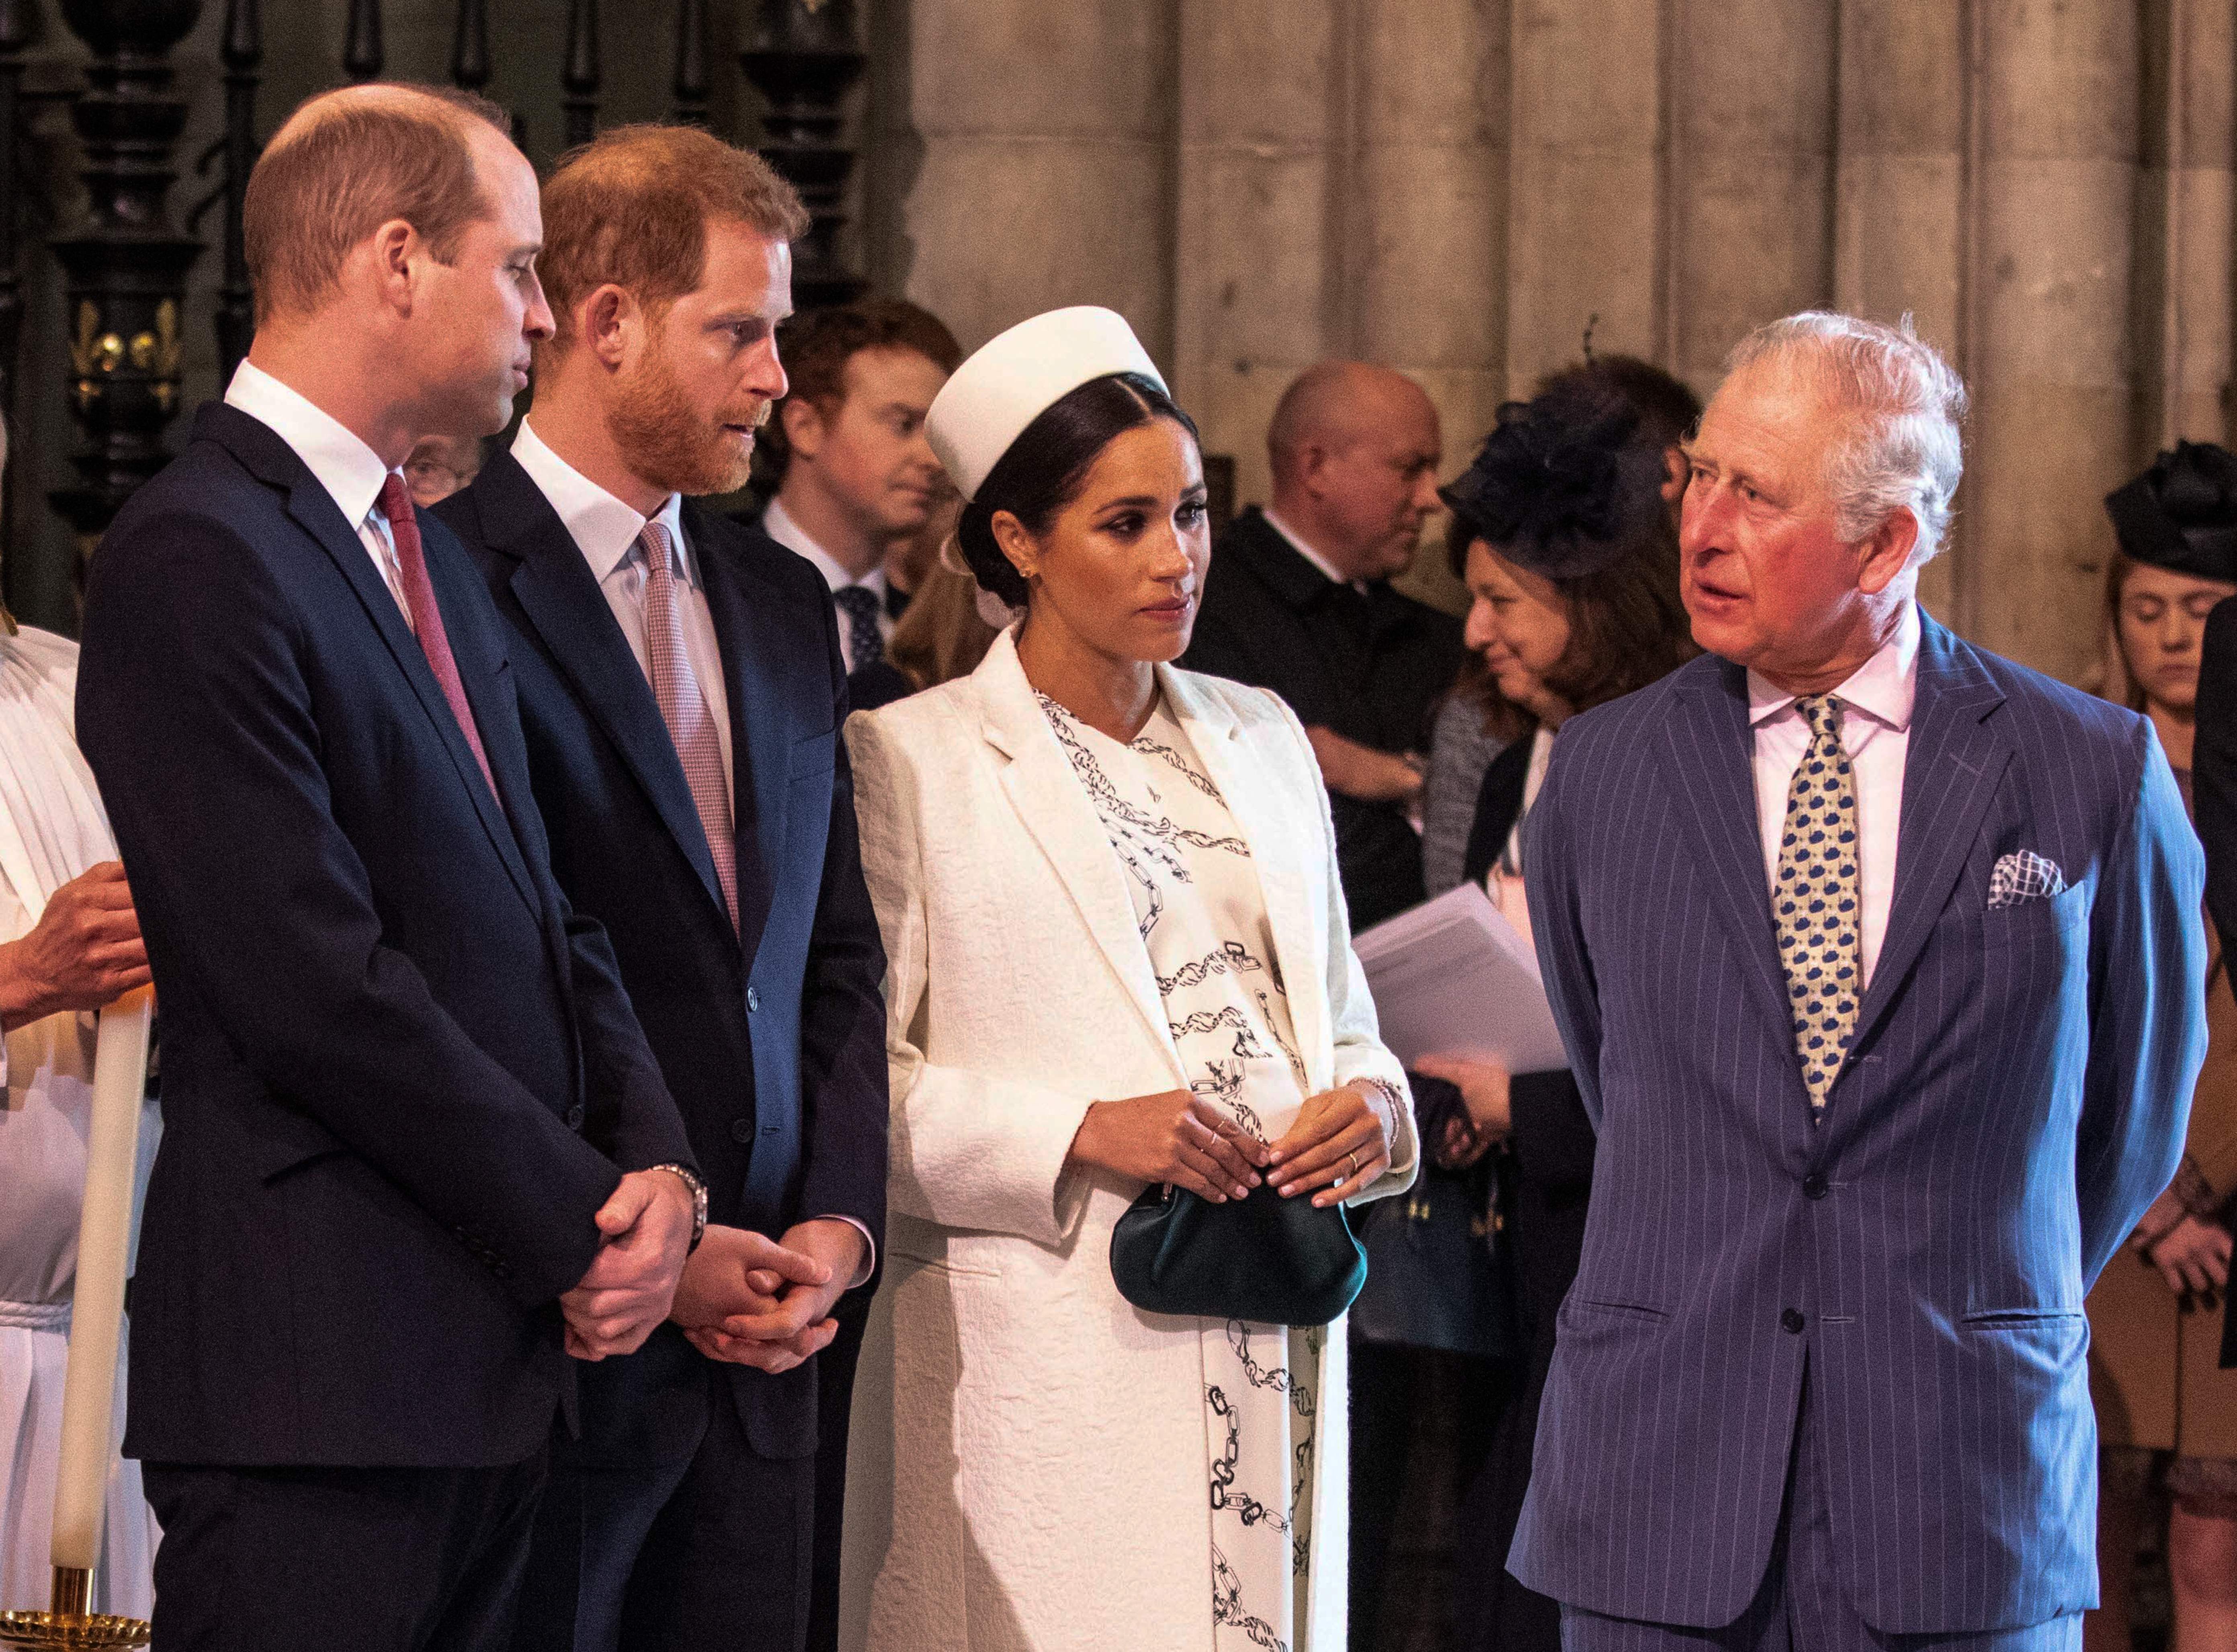 Meghan, duquesa de Sussex, habla con el príncipe Charles, príncipe de Gales, mientras el príncipe William, duque de Cambridge, habla con el príncipe Harry, duque de Sussex, en el servicio del Día de la Commonwealth en Londres el 11 de marzo de 2019. | Fuente: Getty Images